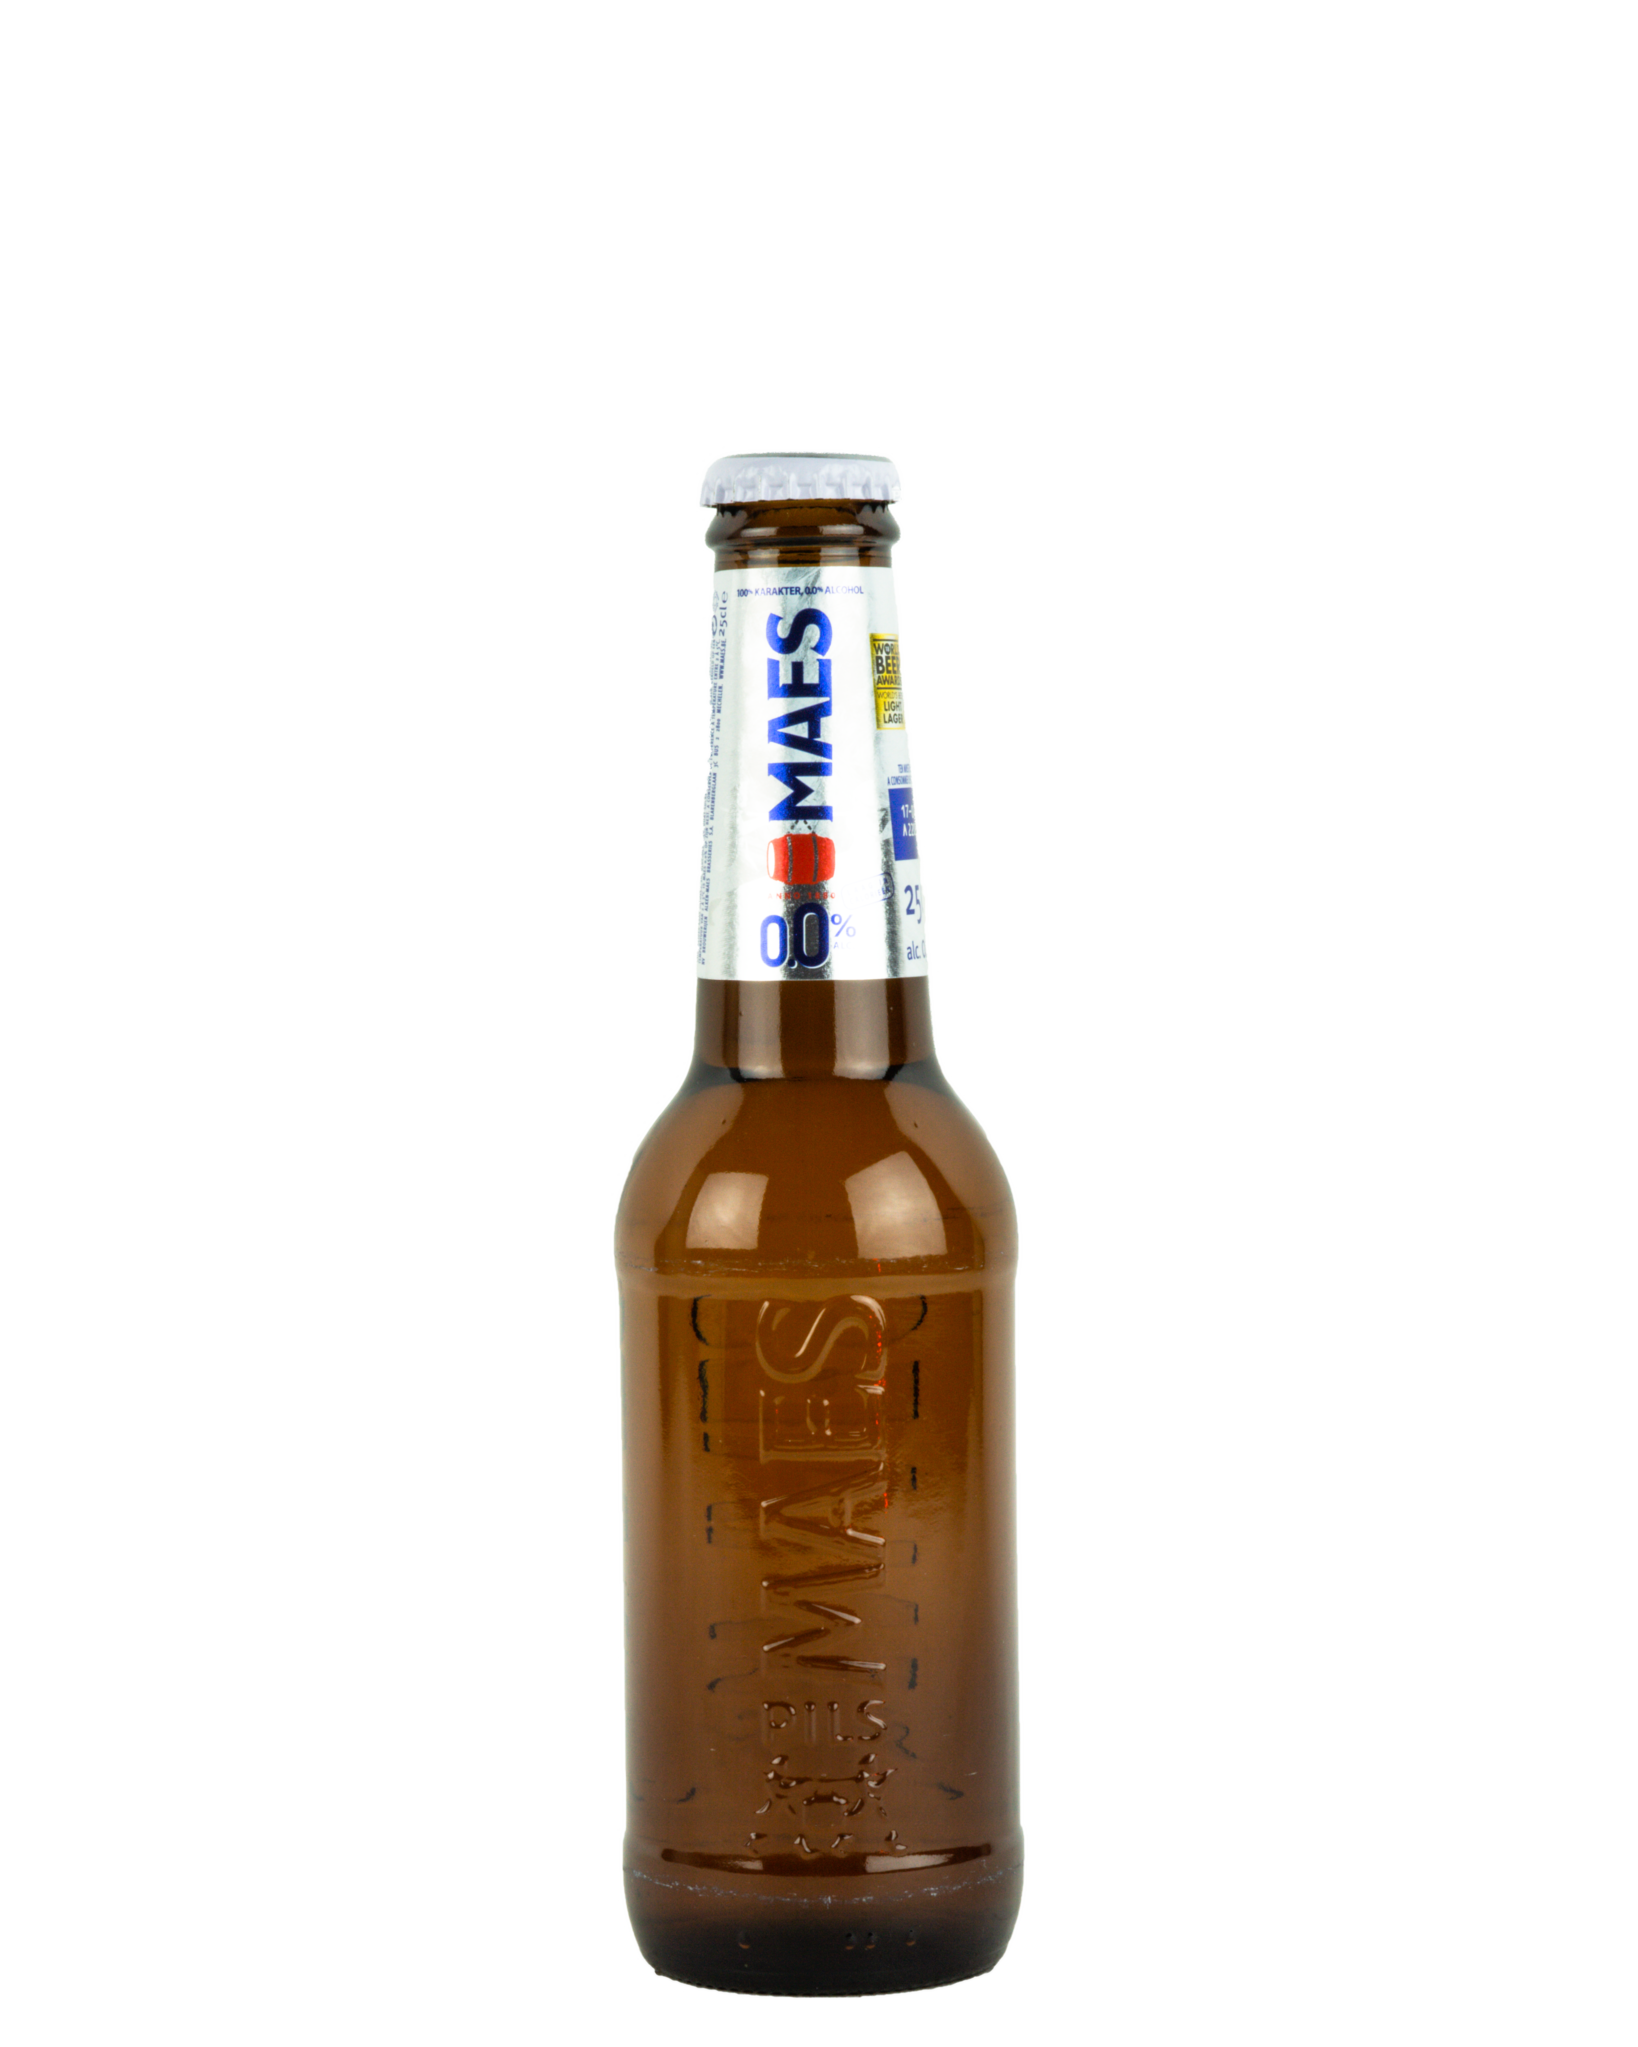 Maes 0.0% 25Cl - Acheter votre biere belge online - Belgian Beer